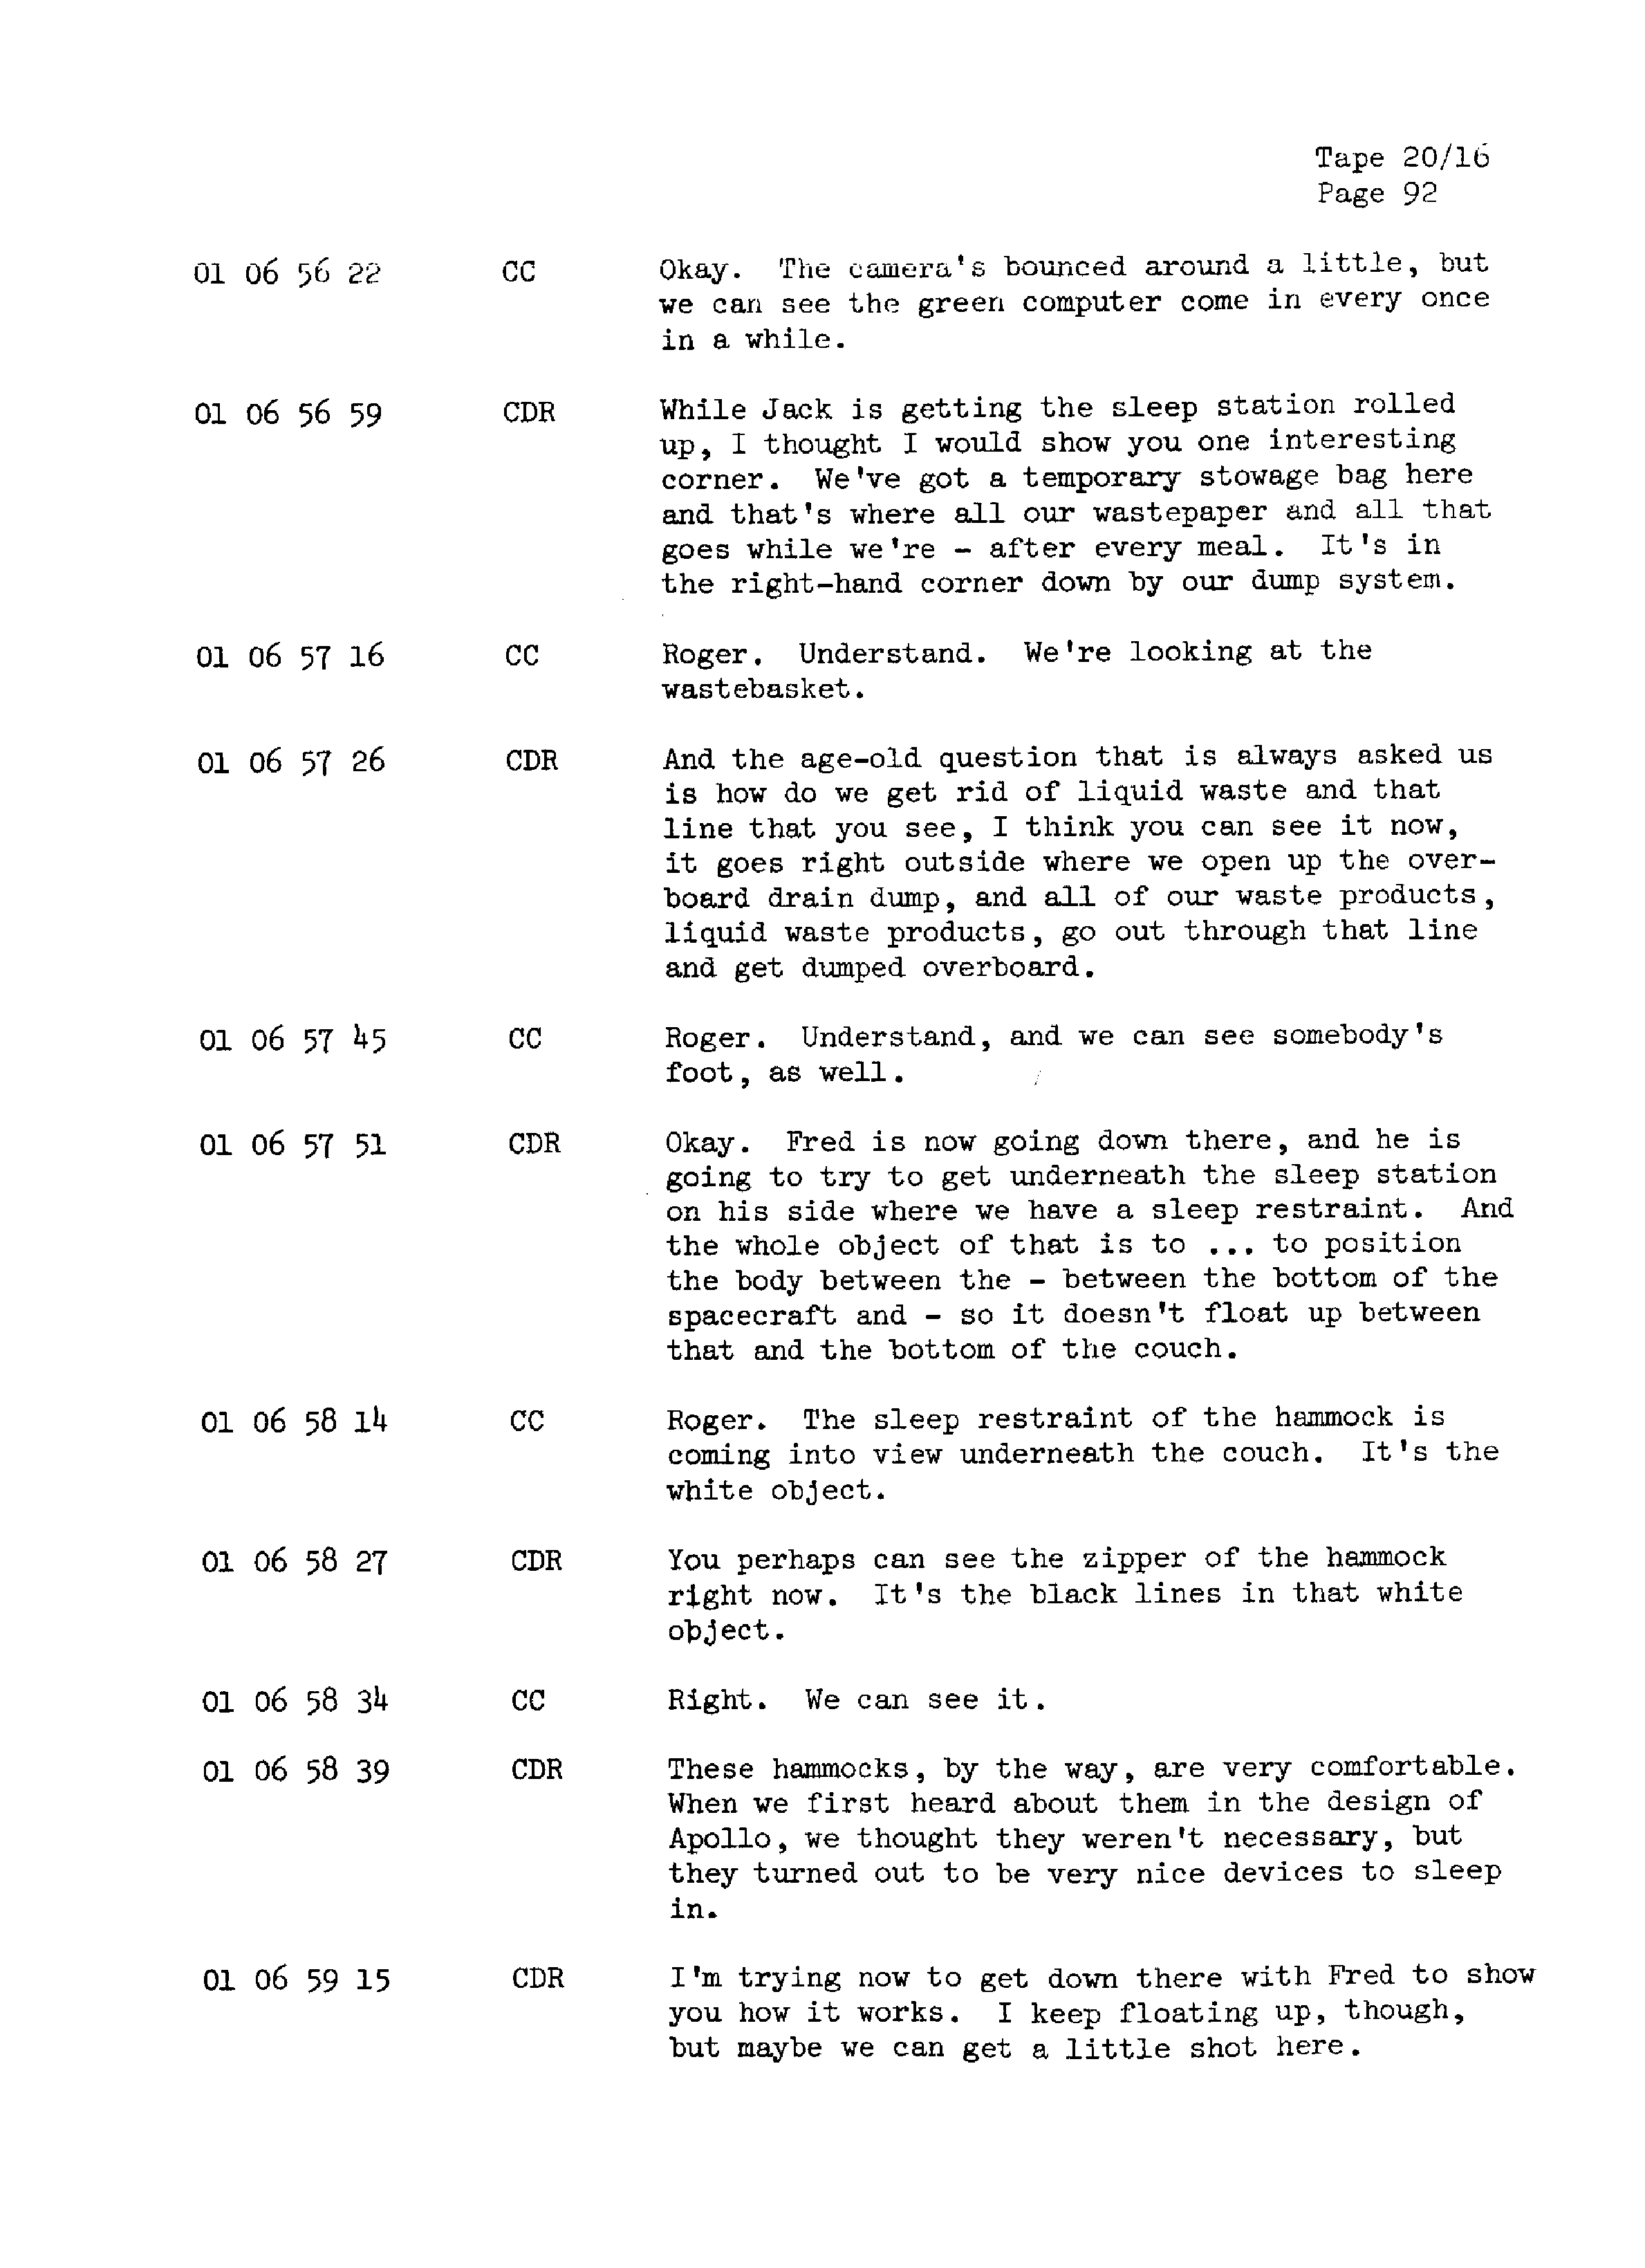 Page 99 of Apollo 13’s original transcript